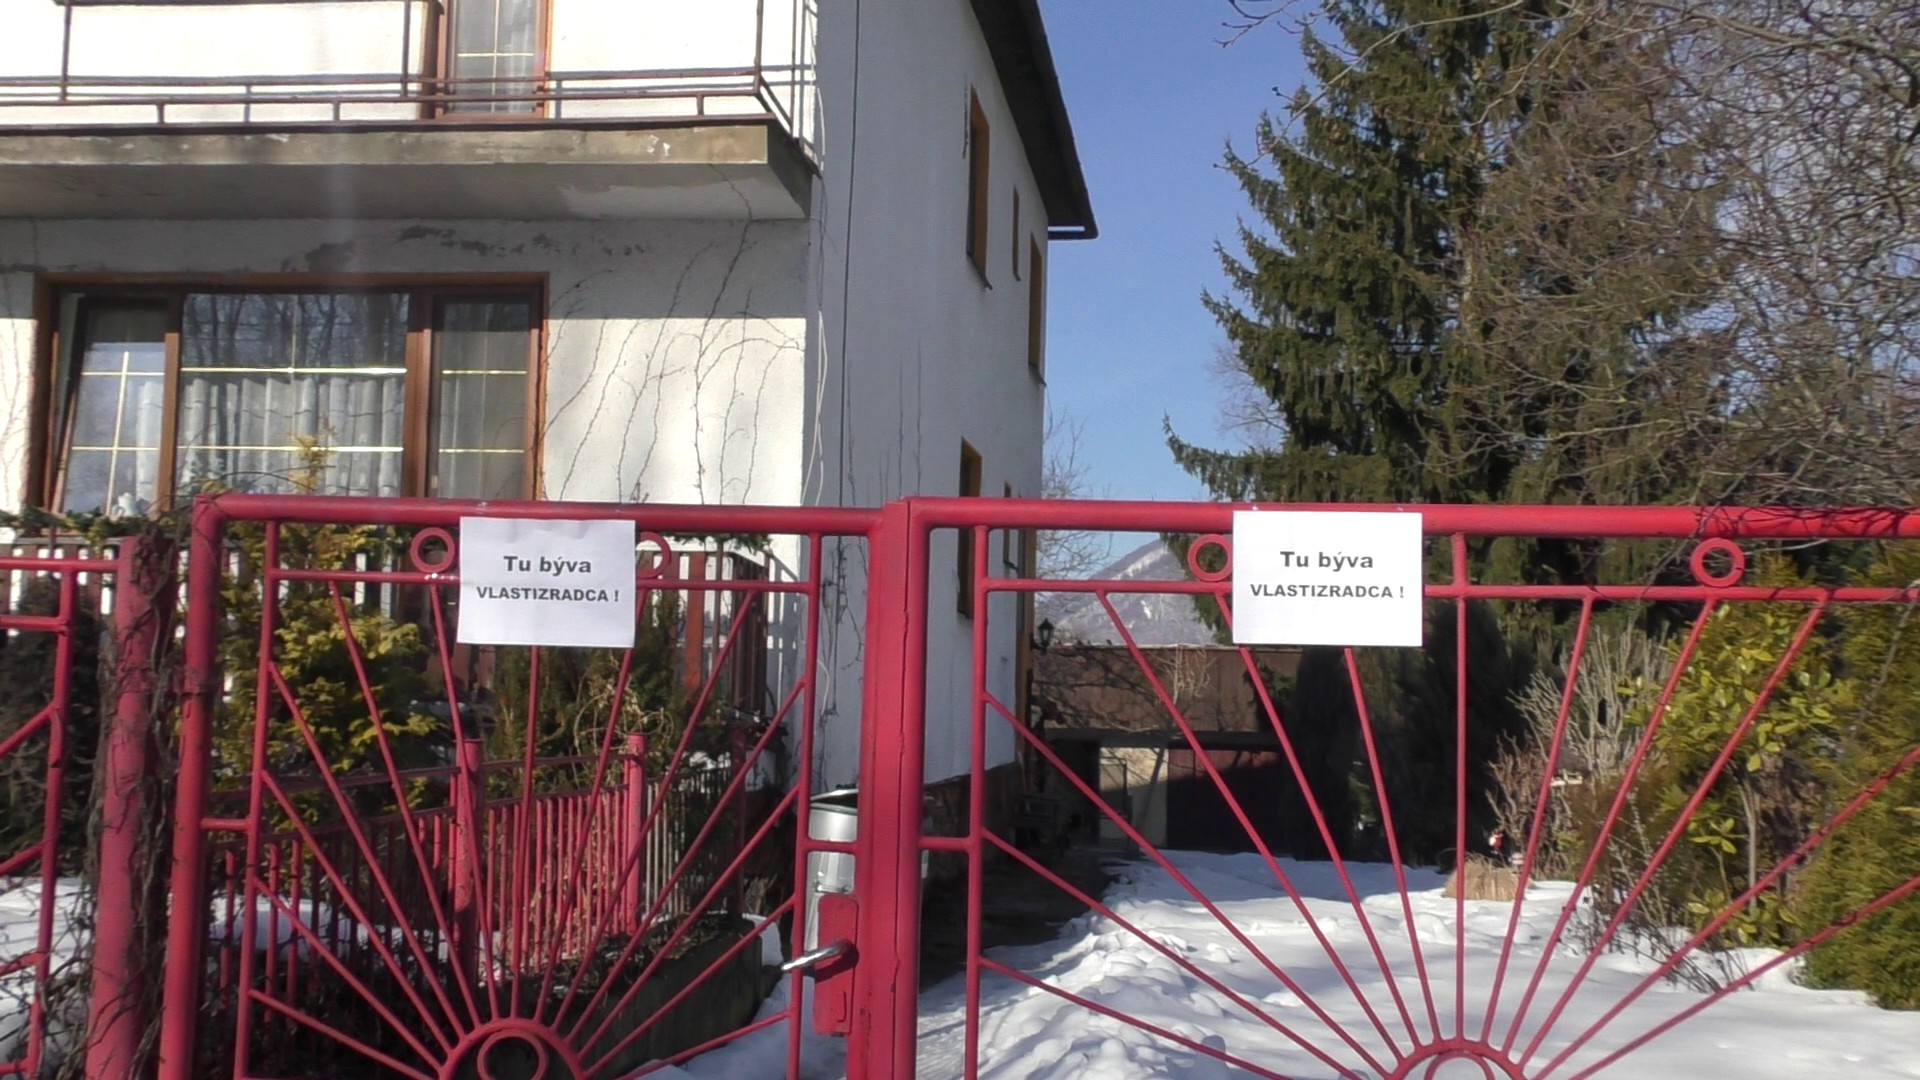 Itt egy hazaáruló lakik – áll a feliraton. Több szlovák parlamenti képviselő lakásánál megjelentek az ehhez hasonló feliratok.